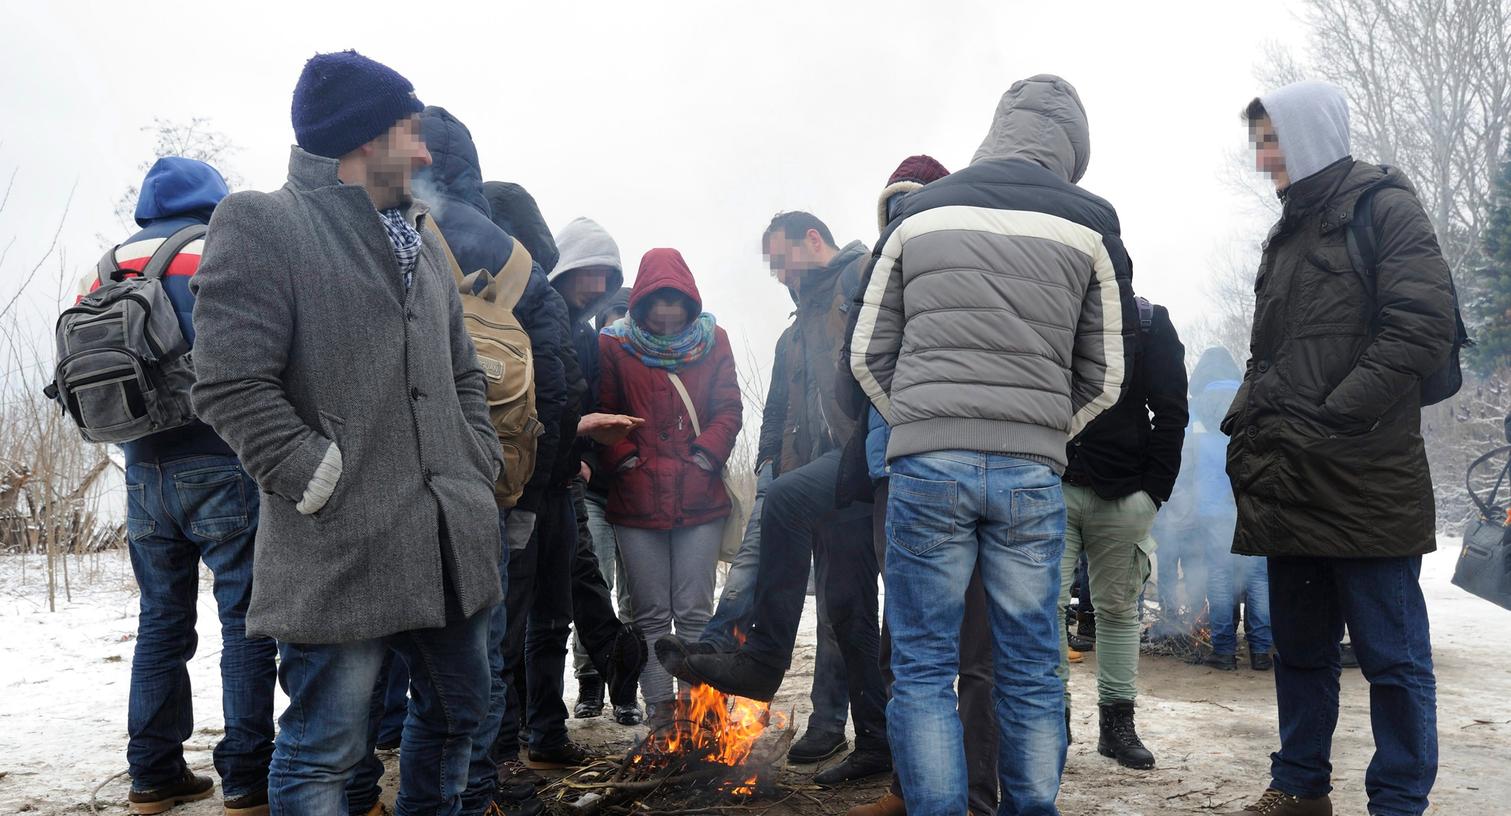 An der ungarisch-serbischen Grenze: Asylbewerber aus dem Kosovo wärmen sich an einem Feuer.